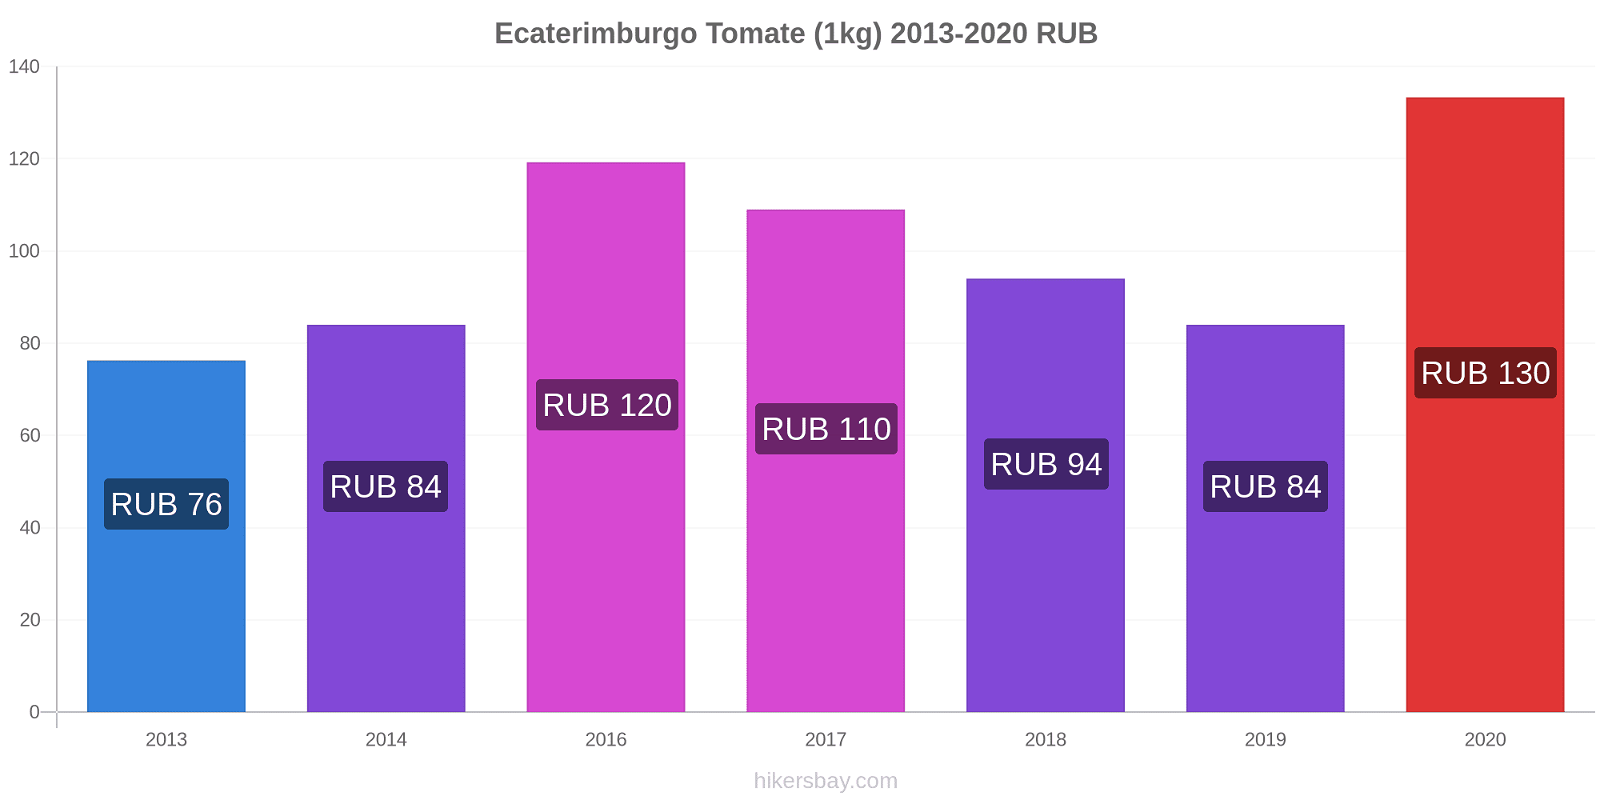 Ecaterimburgo variação de preço Tomate (1kg) hikersbay.com